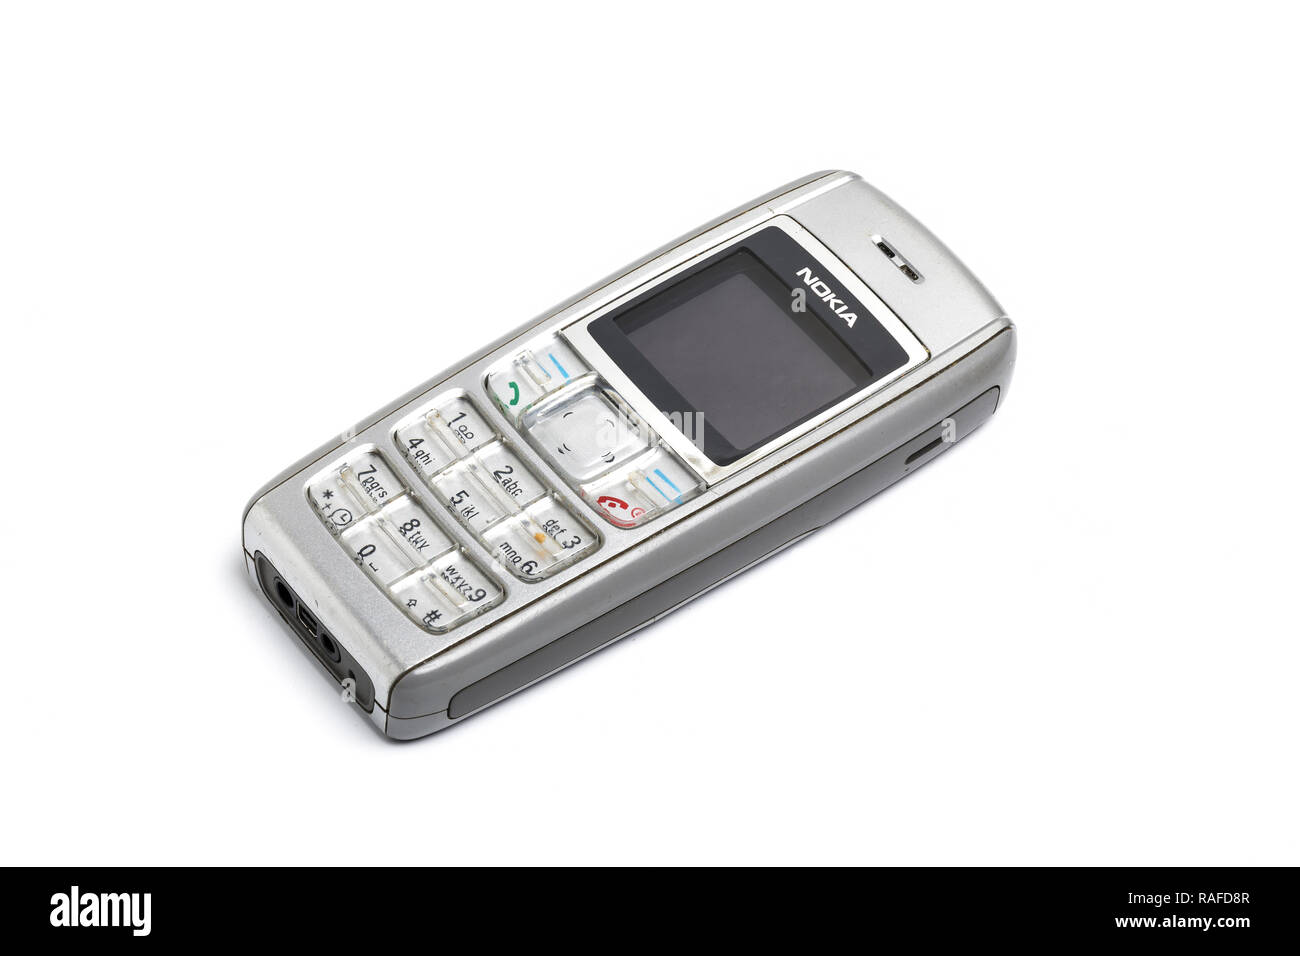 Nokia 1600 telefono cellulare o telefono cellulare, dal 2006. Ben utilizzati. Foto Stock